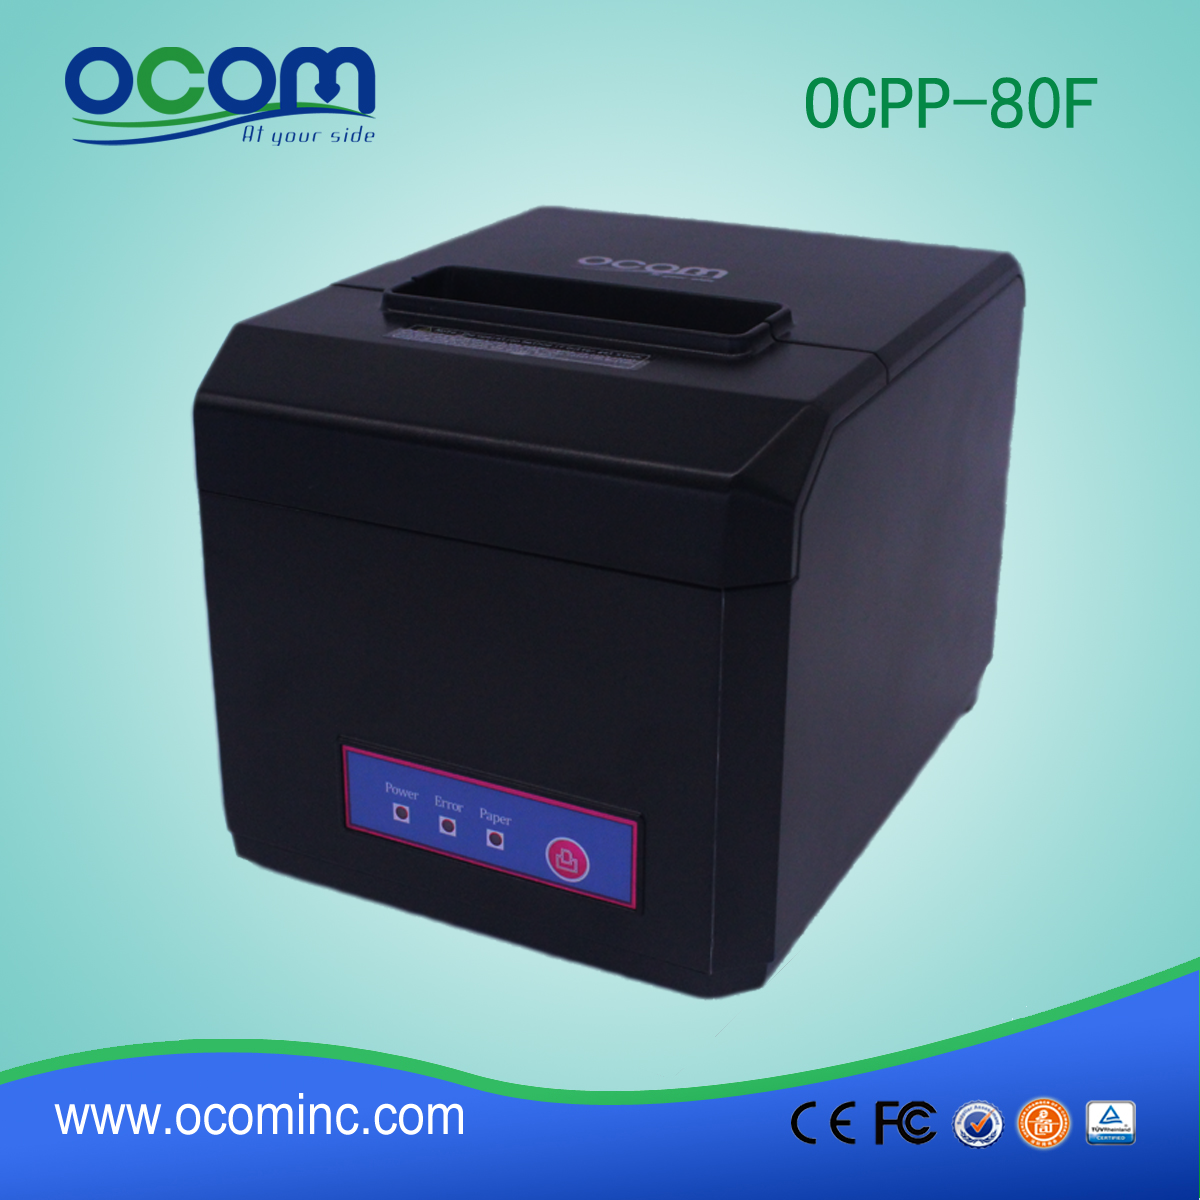 OCPP -80F 58mm e 80mm di larghezza della carta Stampante per ricevute termica POS